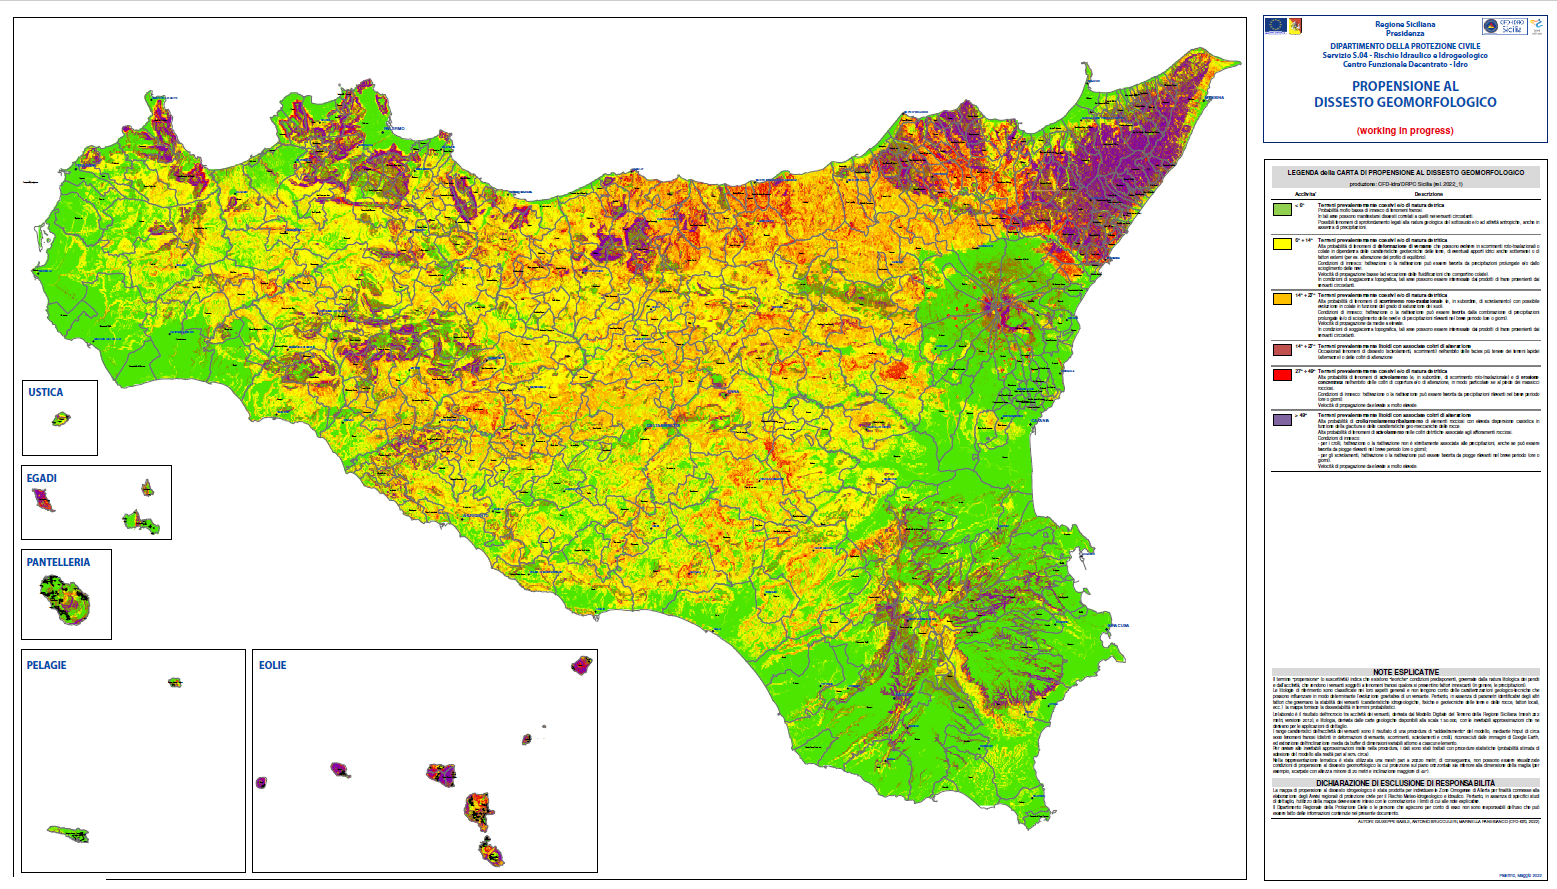 Mappa della propensione al dissesto geomorfologico: la Giunta regionale ha condiviso l’atto di indirizzo proposto dal DRPC Sicilia